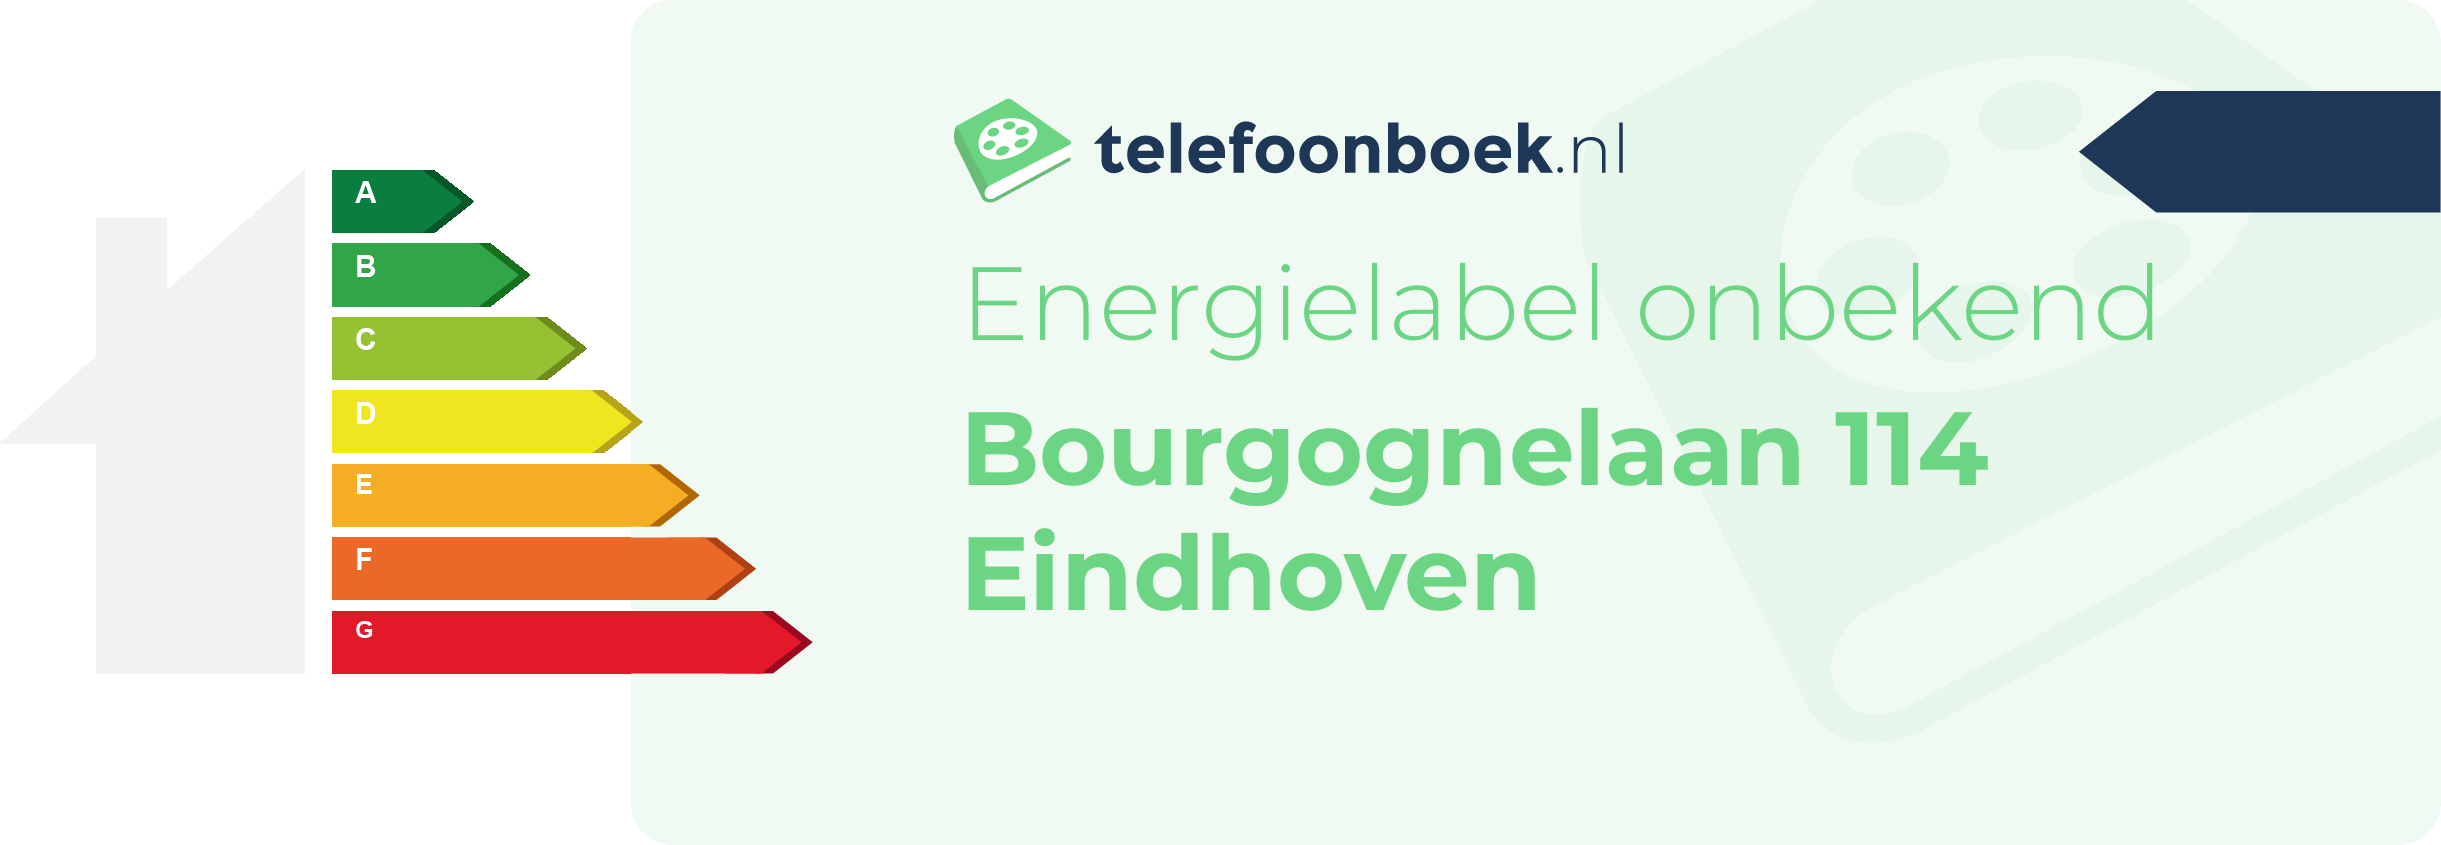 Energielabel Bourgognelaan 114 Eindhoven